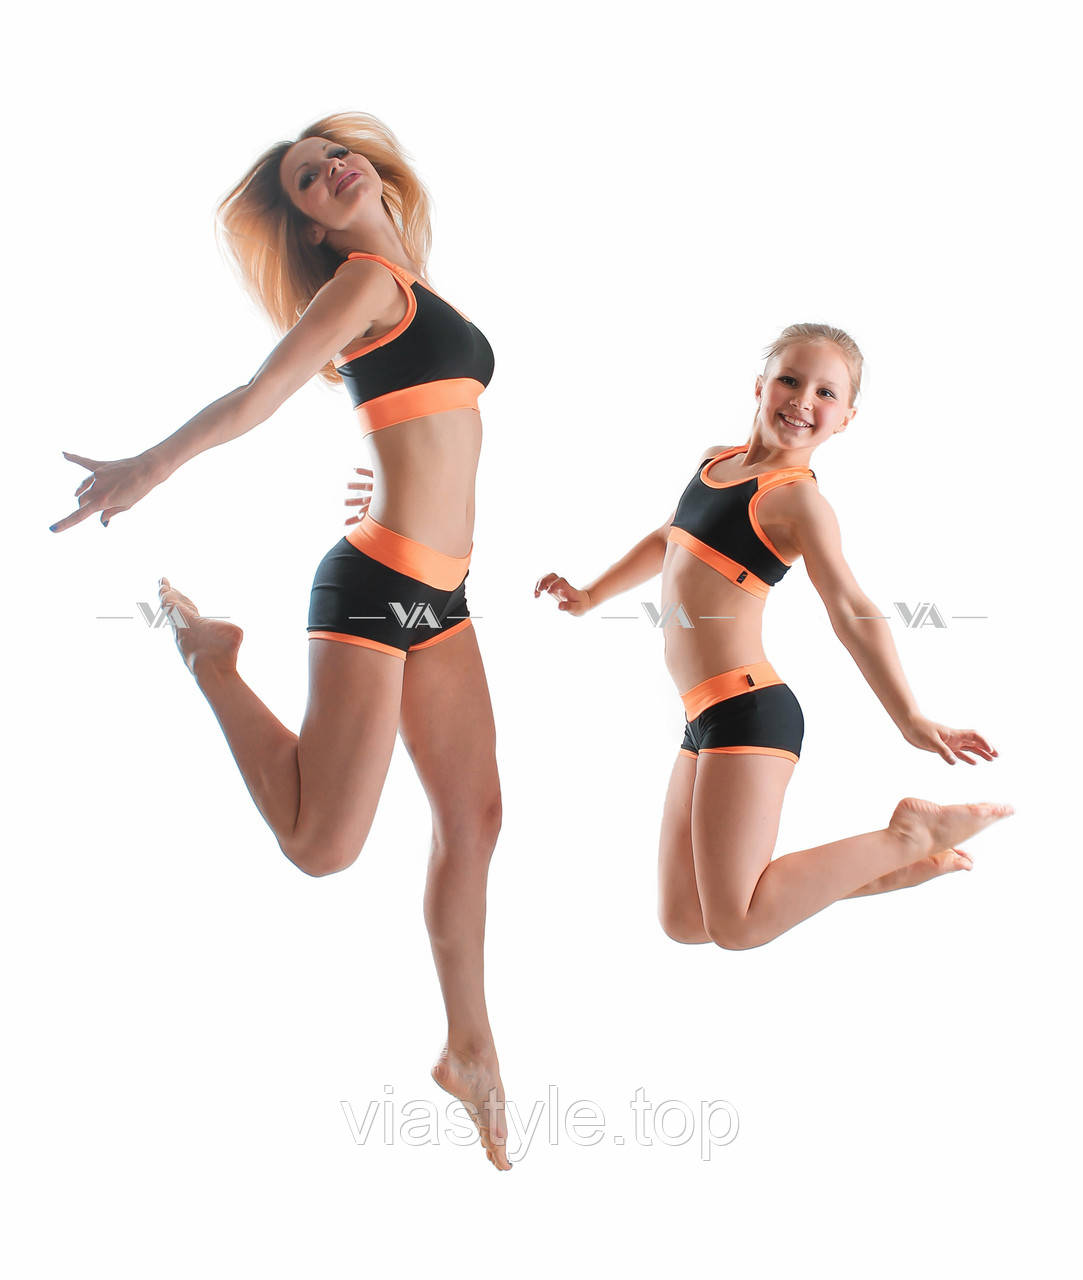 Топ і шорти VIA Sport мама і дочка для занять pole dance і фітнесом